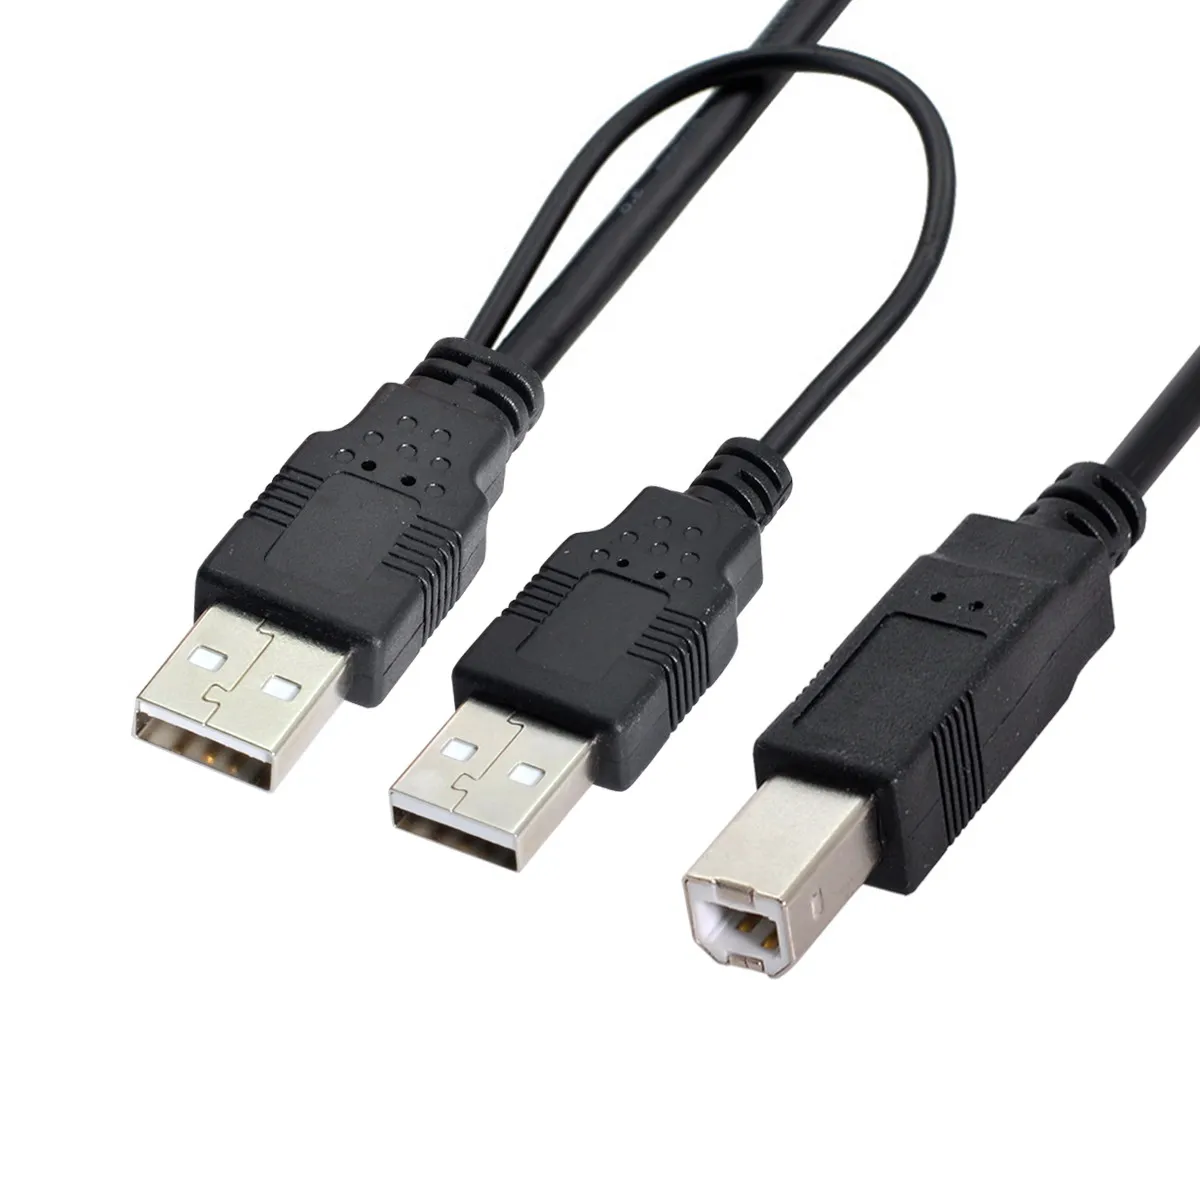 

CY двойной USB 2,0 штекер-стандарт B штекер Y-образный кабель 80 см для принтера, сканера и внешнего жесткого диска